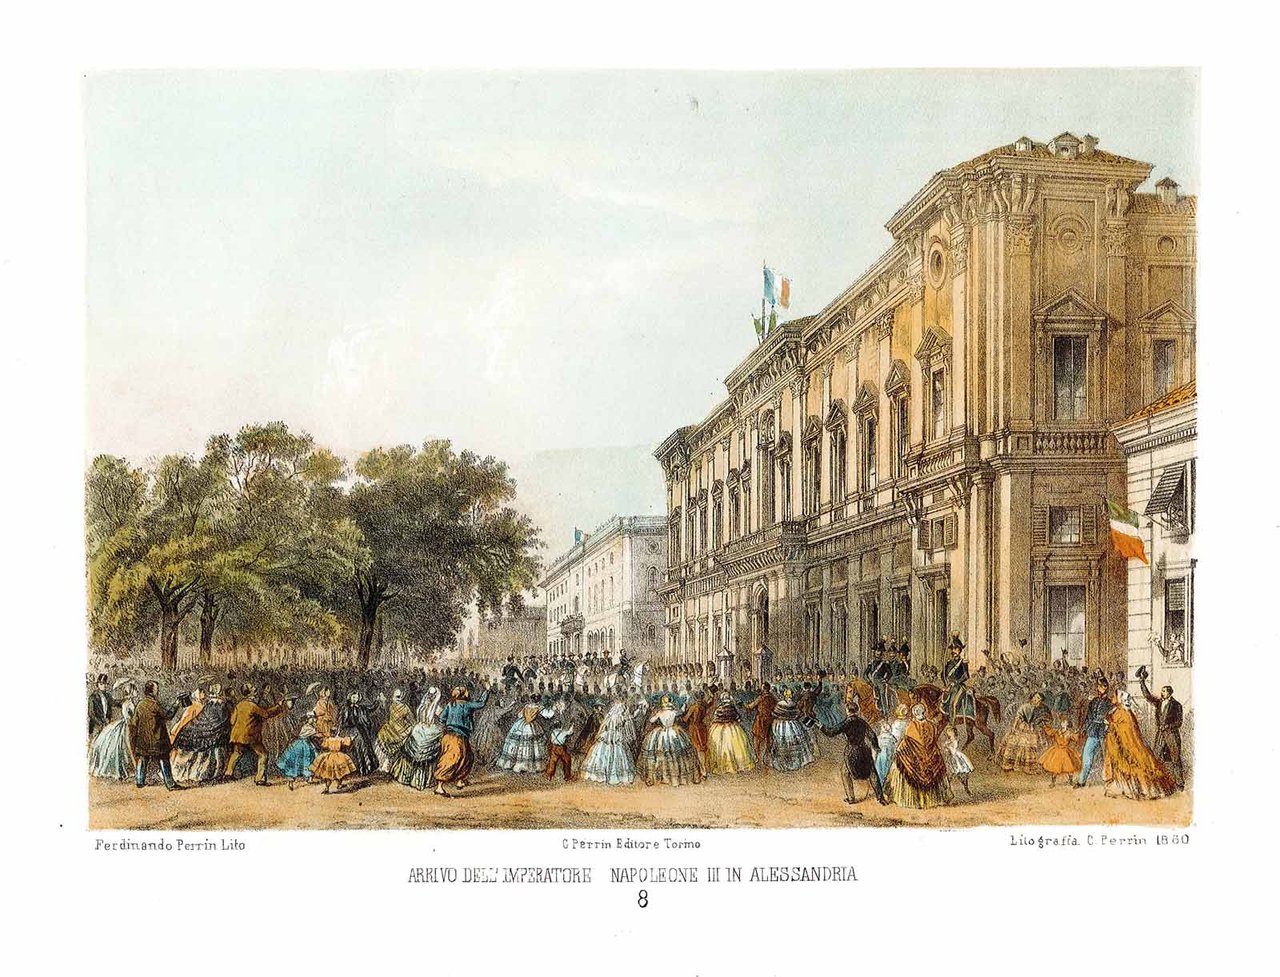 Arrivo dell'Imperatore Napoleone III in Alessandria